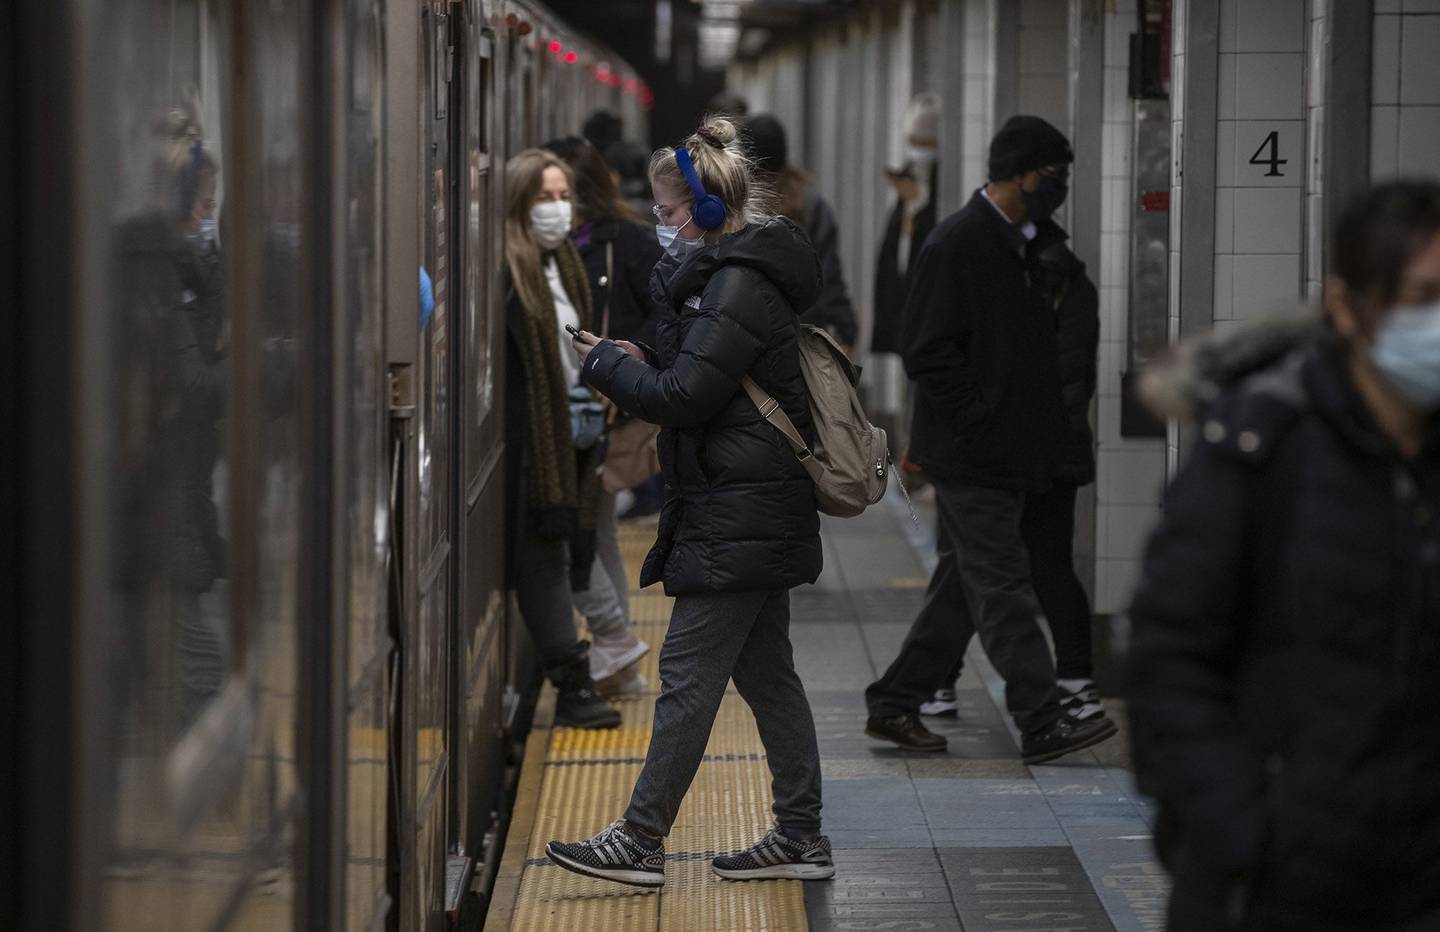 Viajeros suben y bajan de un tren subterráneo en una estación de Nueva York.